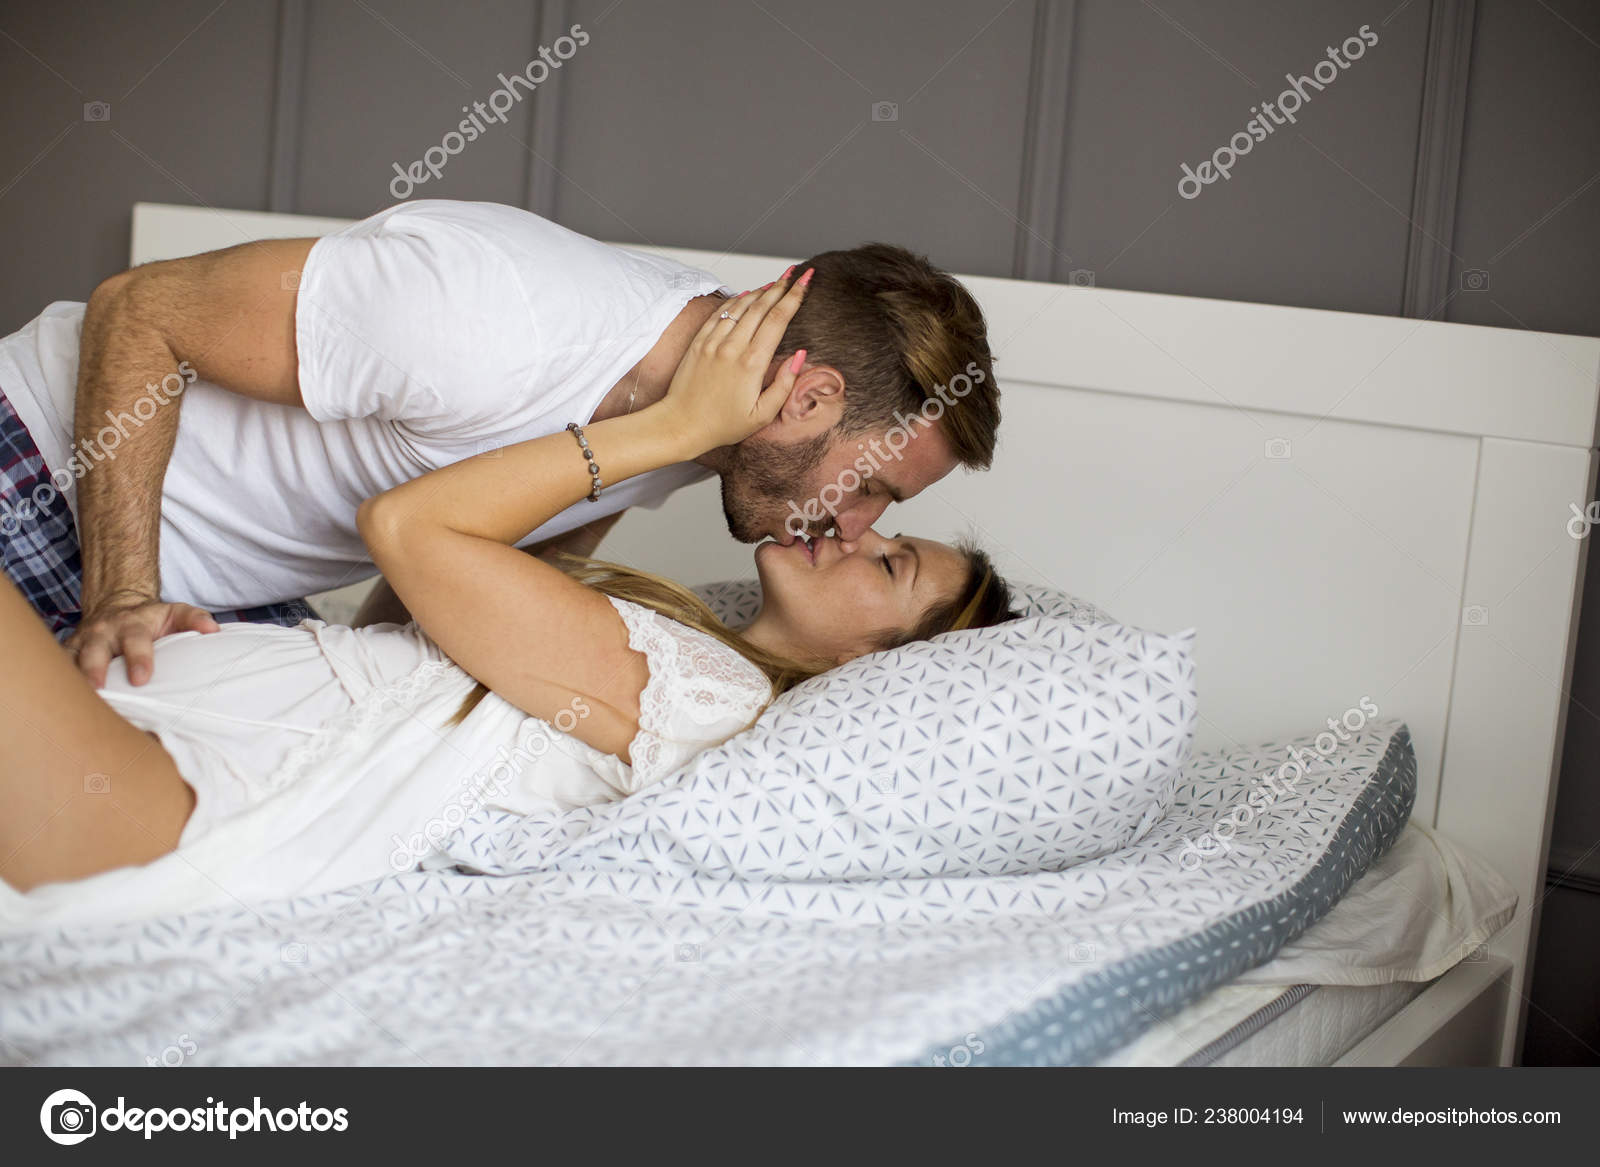 Поцелуи пары в комнате на кровате